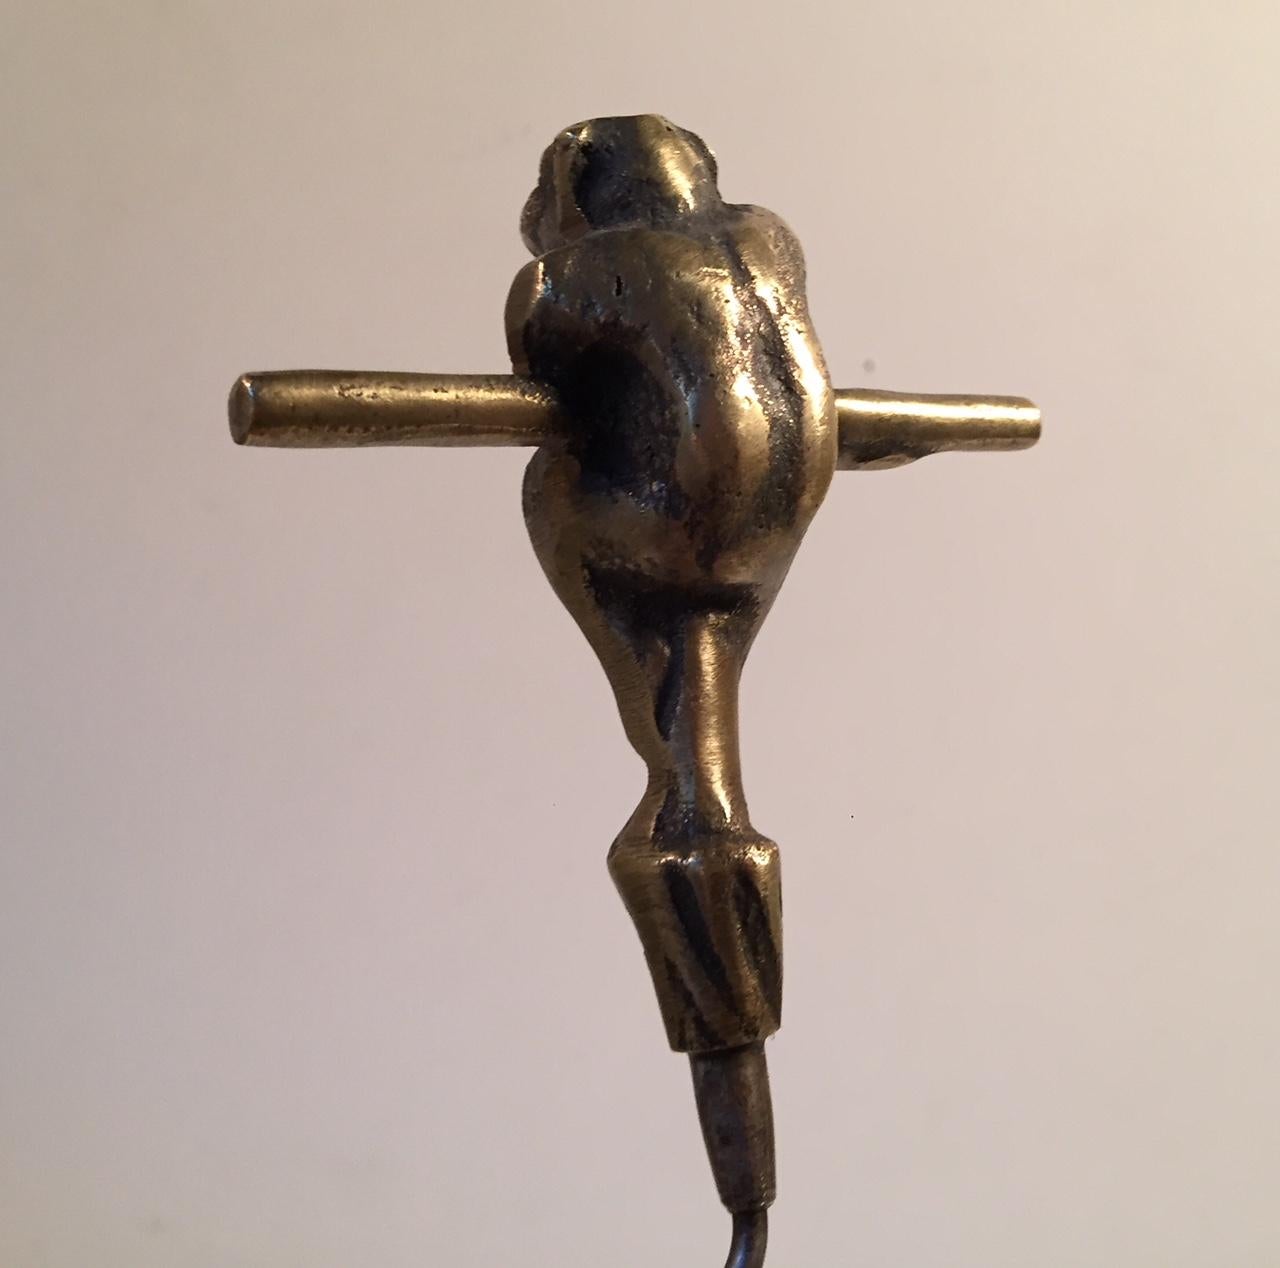 Art Deco Vintage Danish Monkey Corkscrew in Brass, Kay Bojesen for Einar Dragsted, 1920s